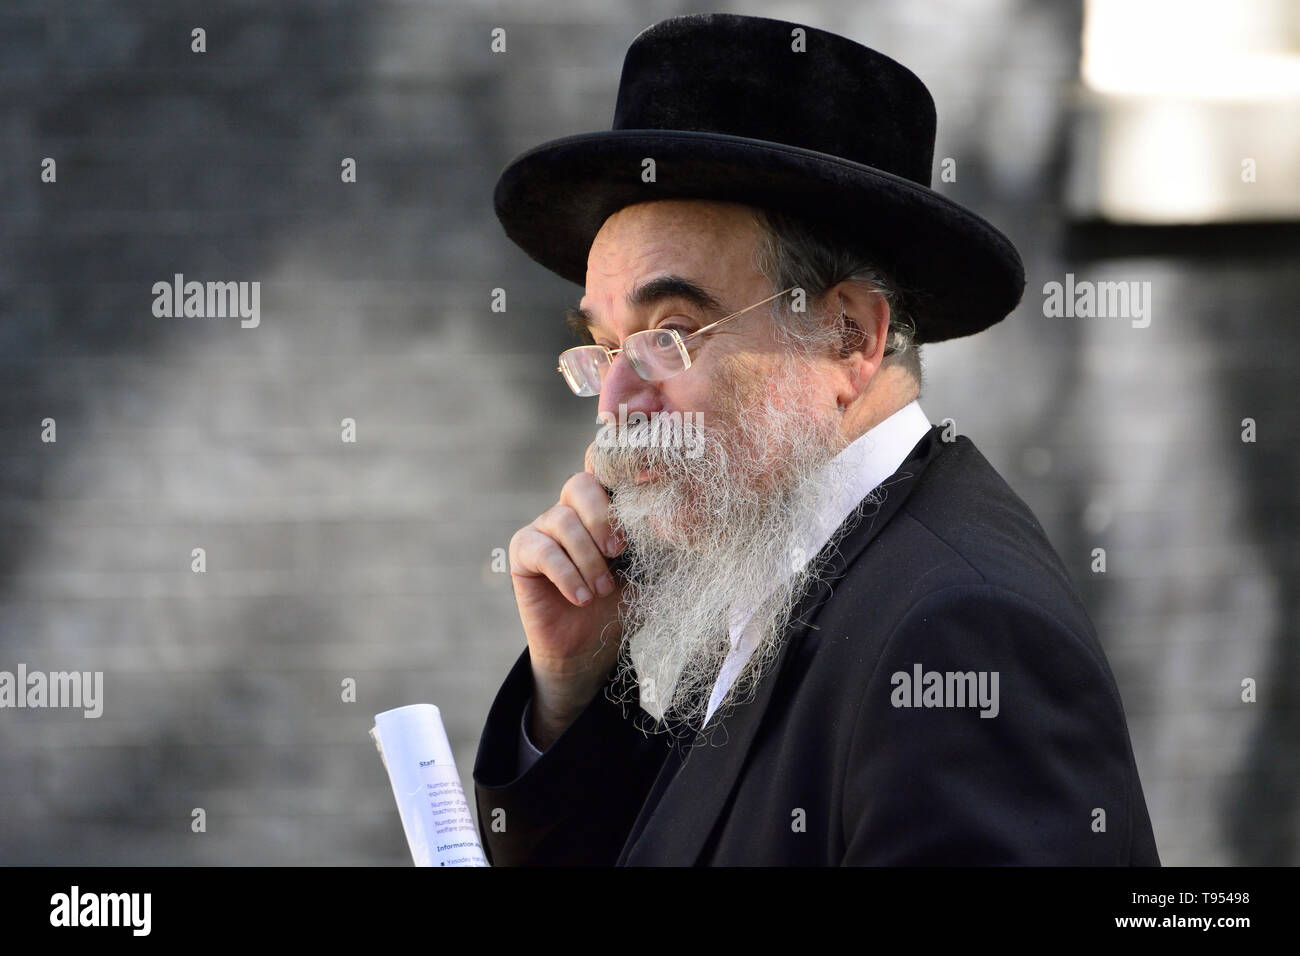 London, England, UK. Abraham Pinter - Haredi Rabbi/Politiker von Stamford Hill, stellt Haredi Interessen an der Londoner jüdischen Forum. Auf seinem Mobi Stockfoto